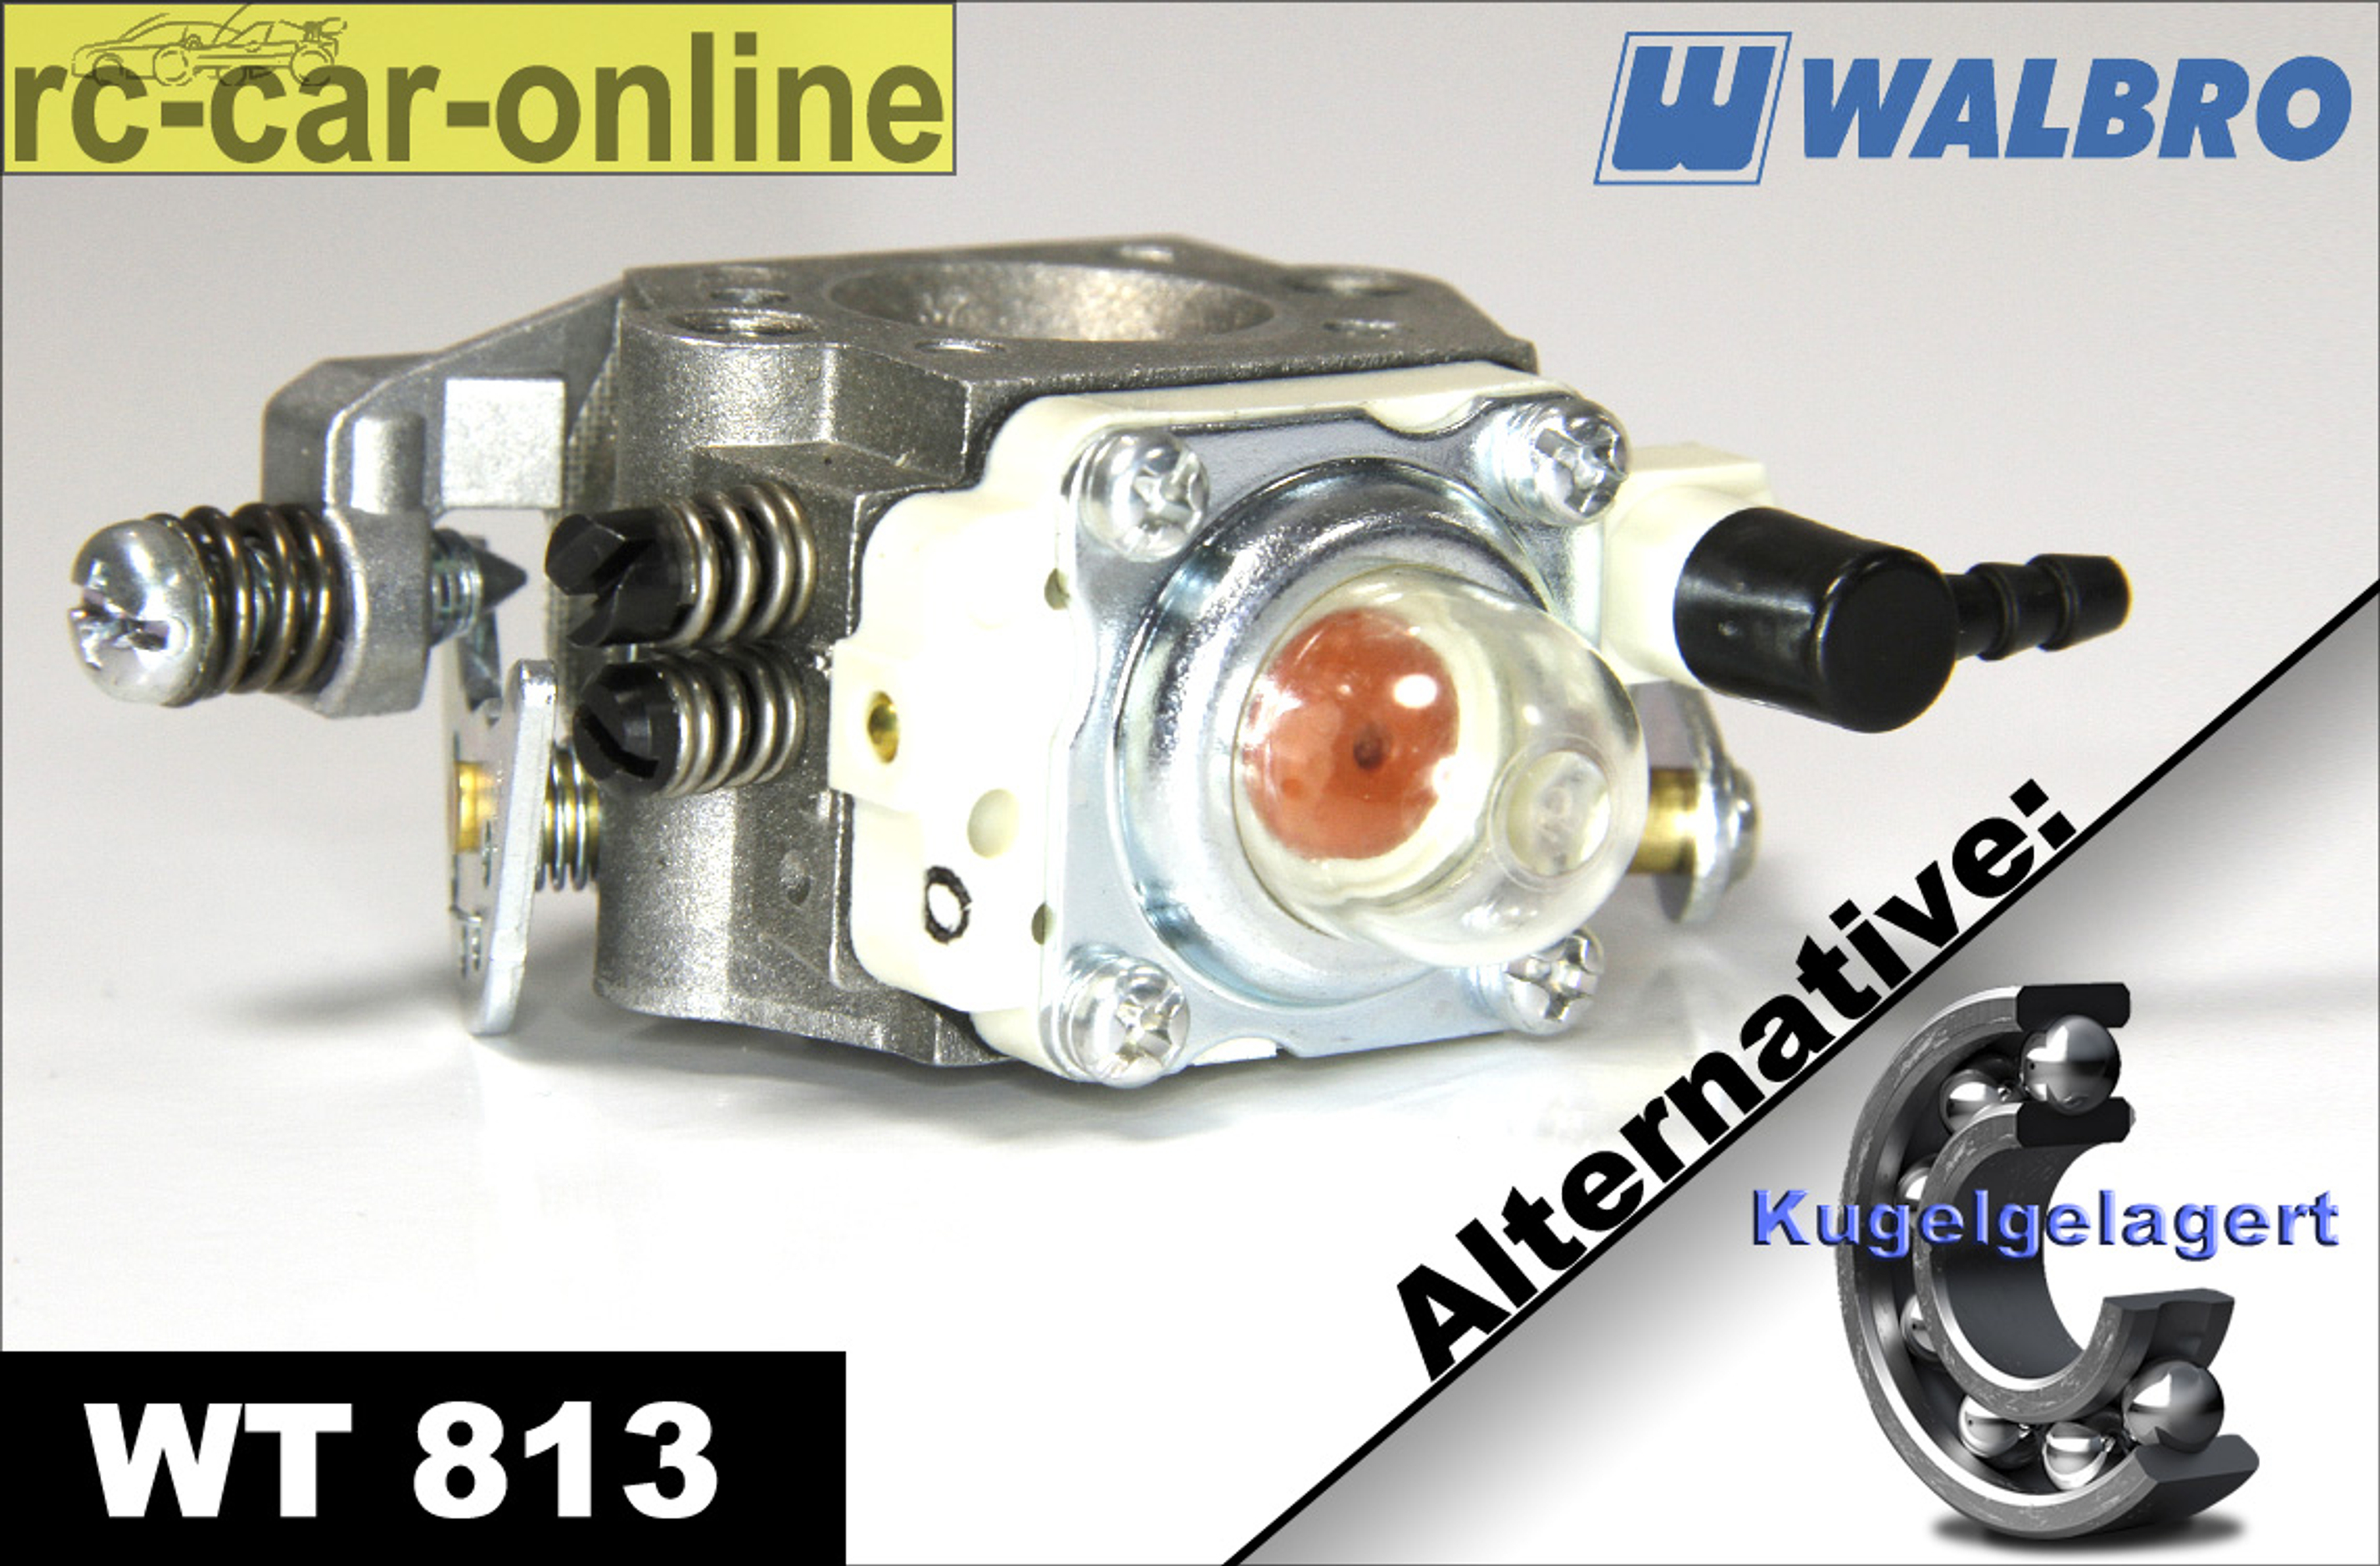 Walbro Vergaser WT 813 normal/kugelgelagert